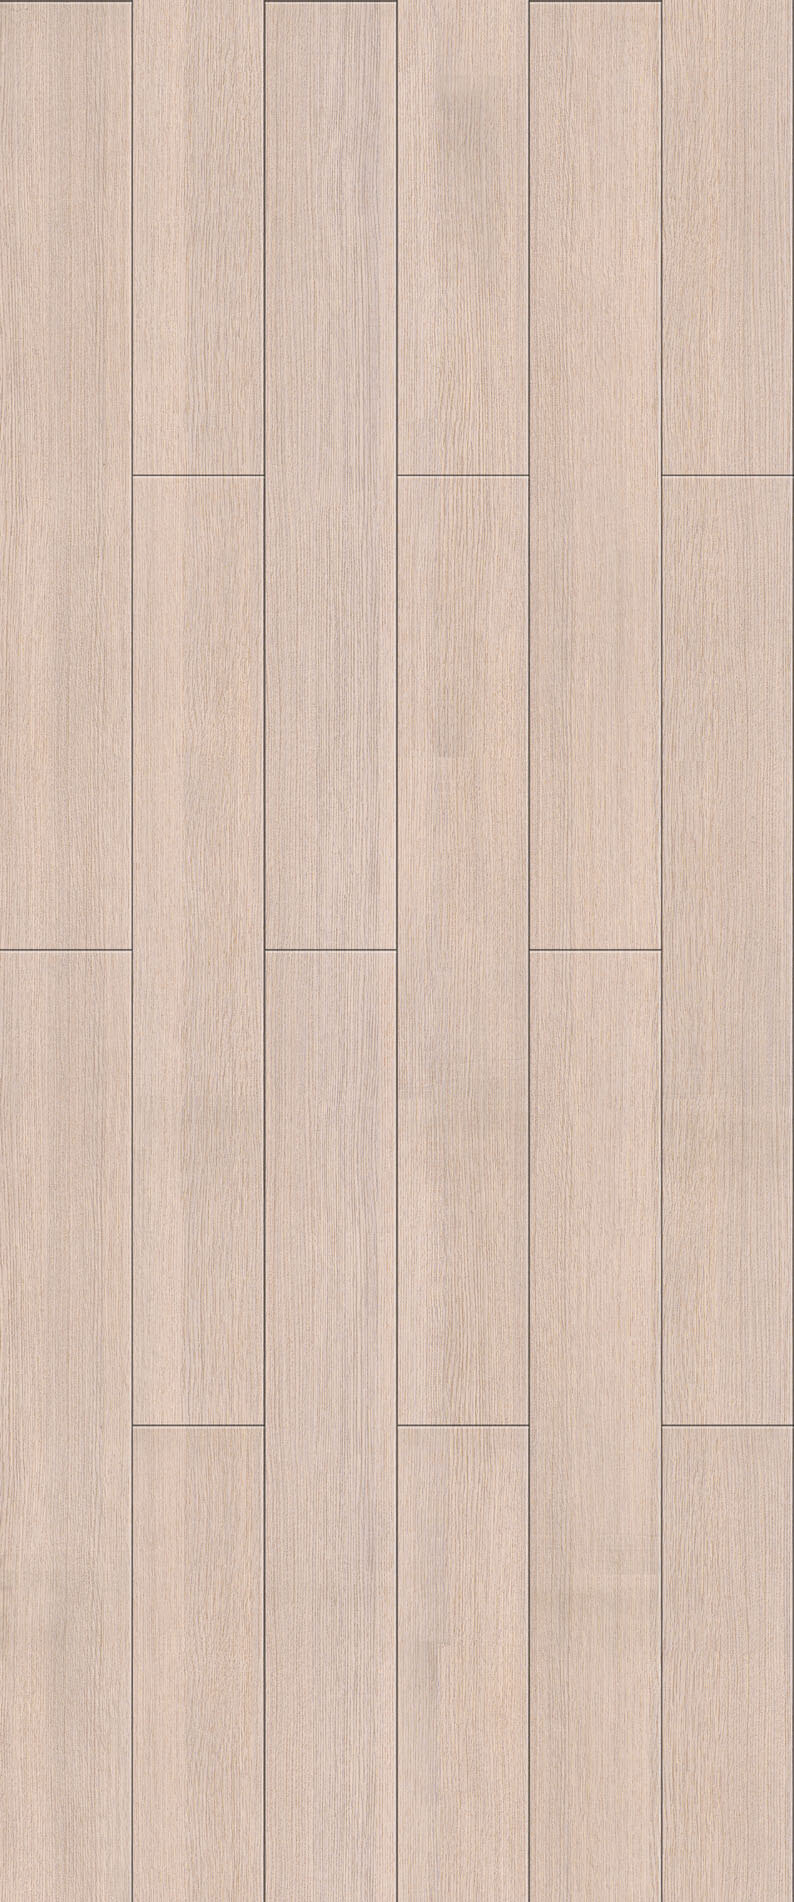 58 木地板 贴图 装修 效果图 地板贴图 木地板贴图 木地板效果图 装修效果图 木地板材质 装饰素材 室内装饰用图